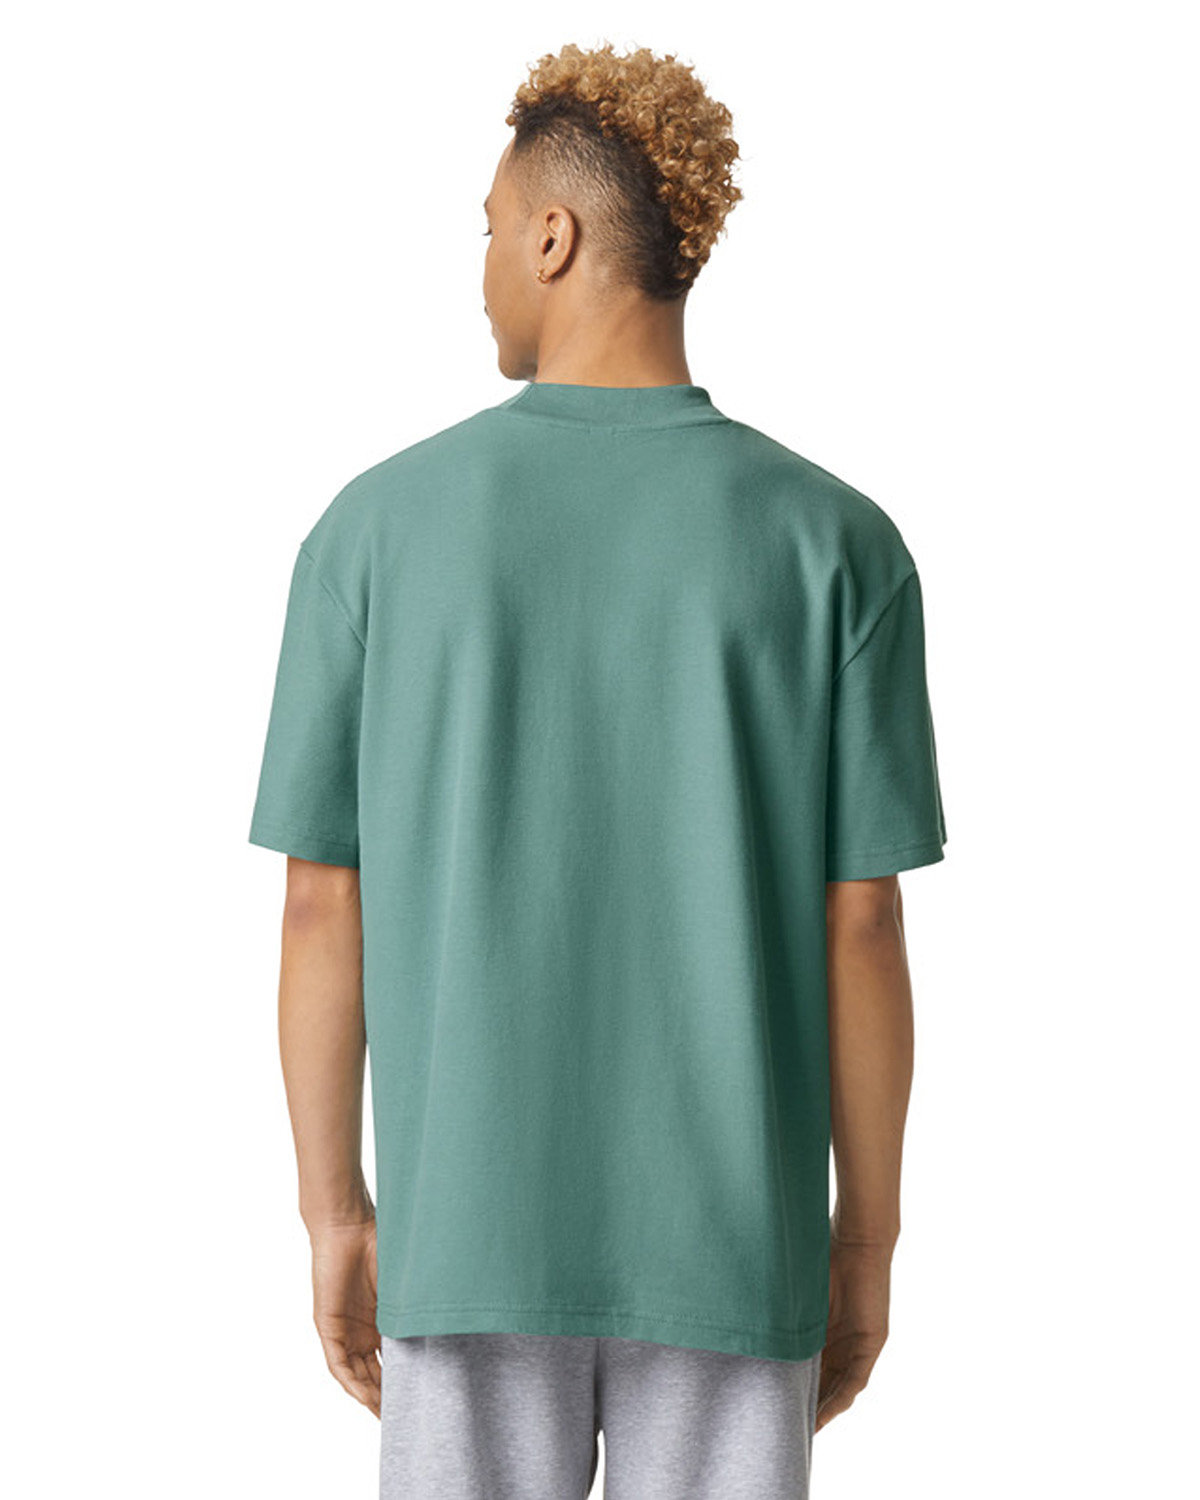 American Apparel Unisex Mockneck Pique T-Shirt | alphabroder